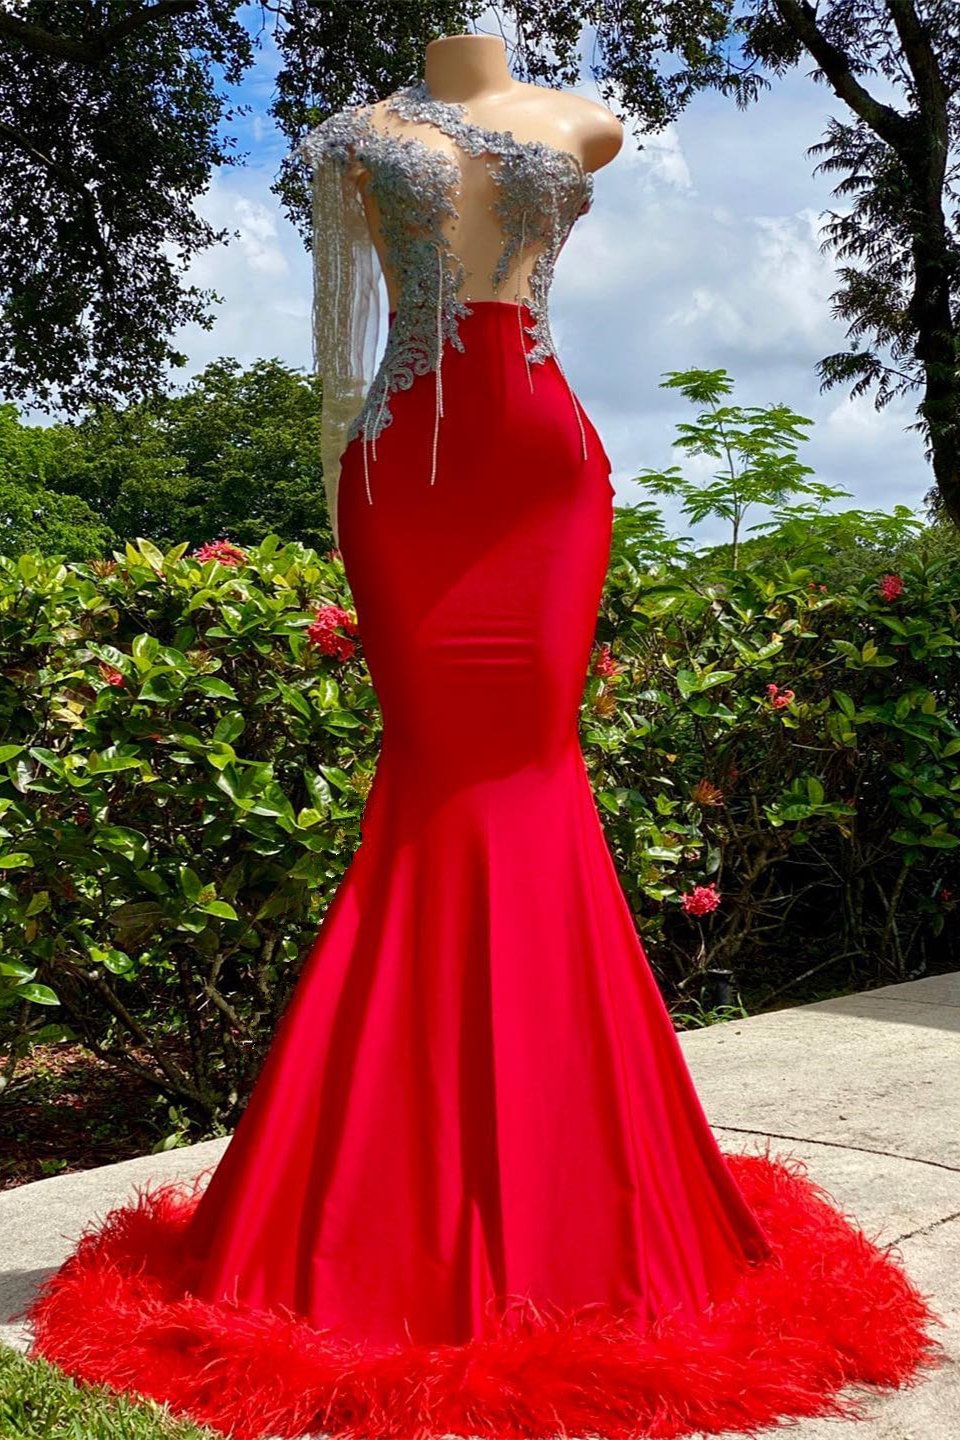 Beautiful Mermaid Red Beaded Prom Dress With Tassels | Ballbellas Ballbellas